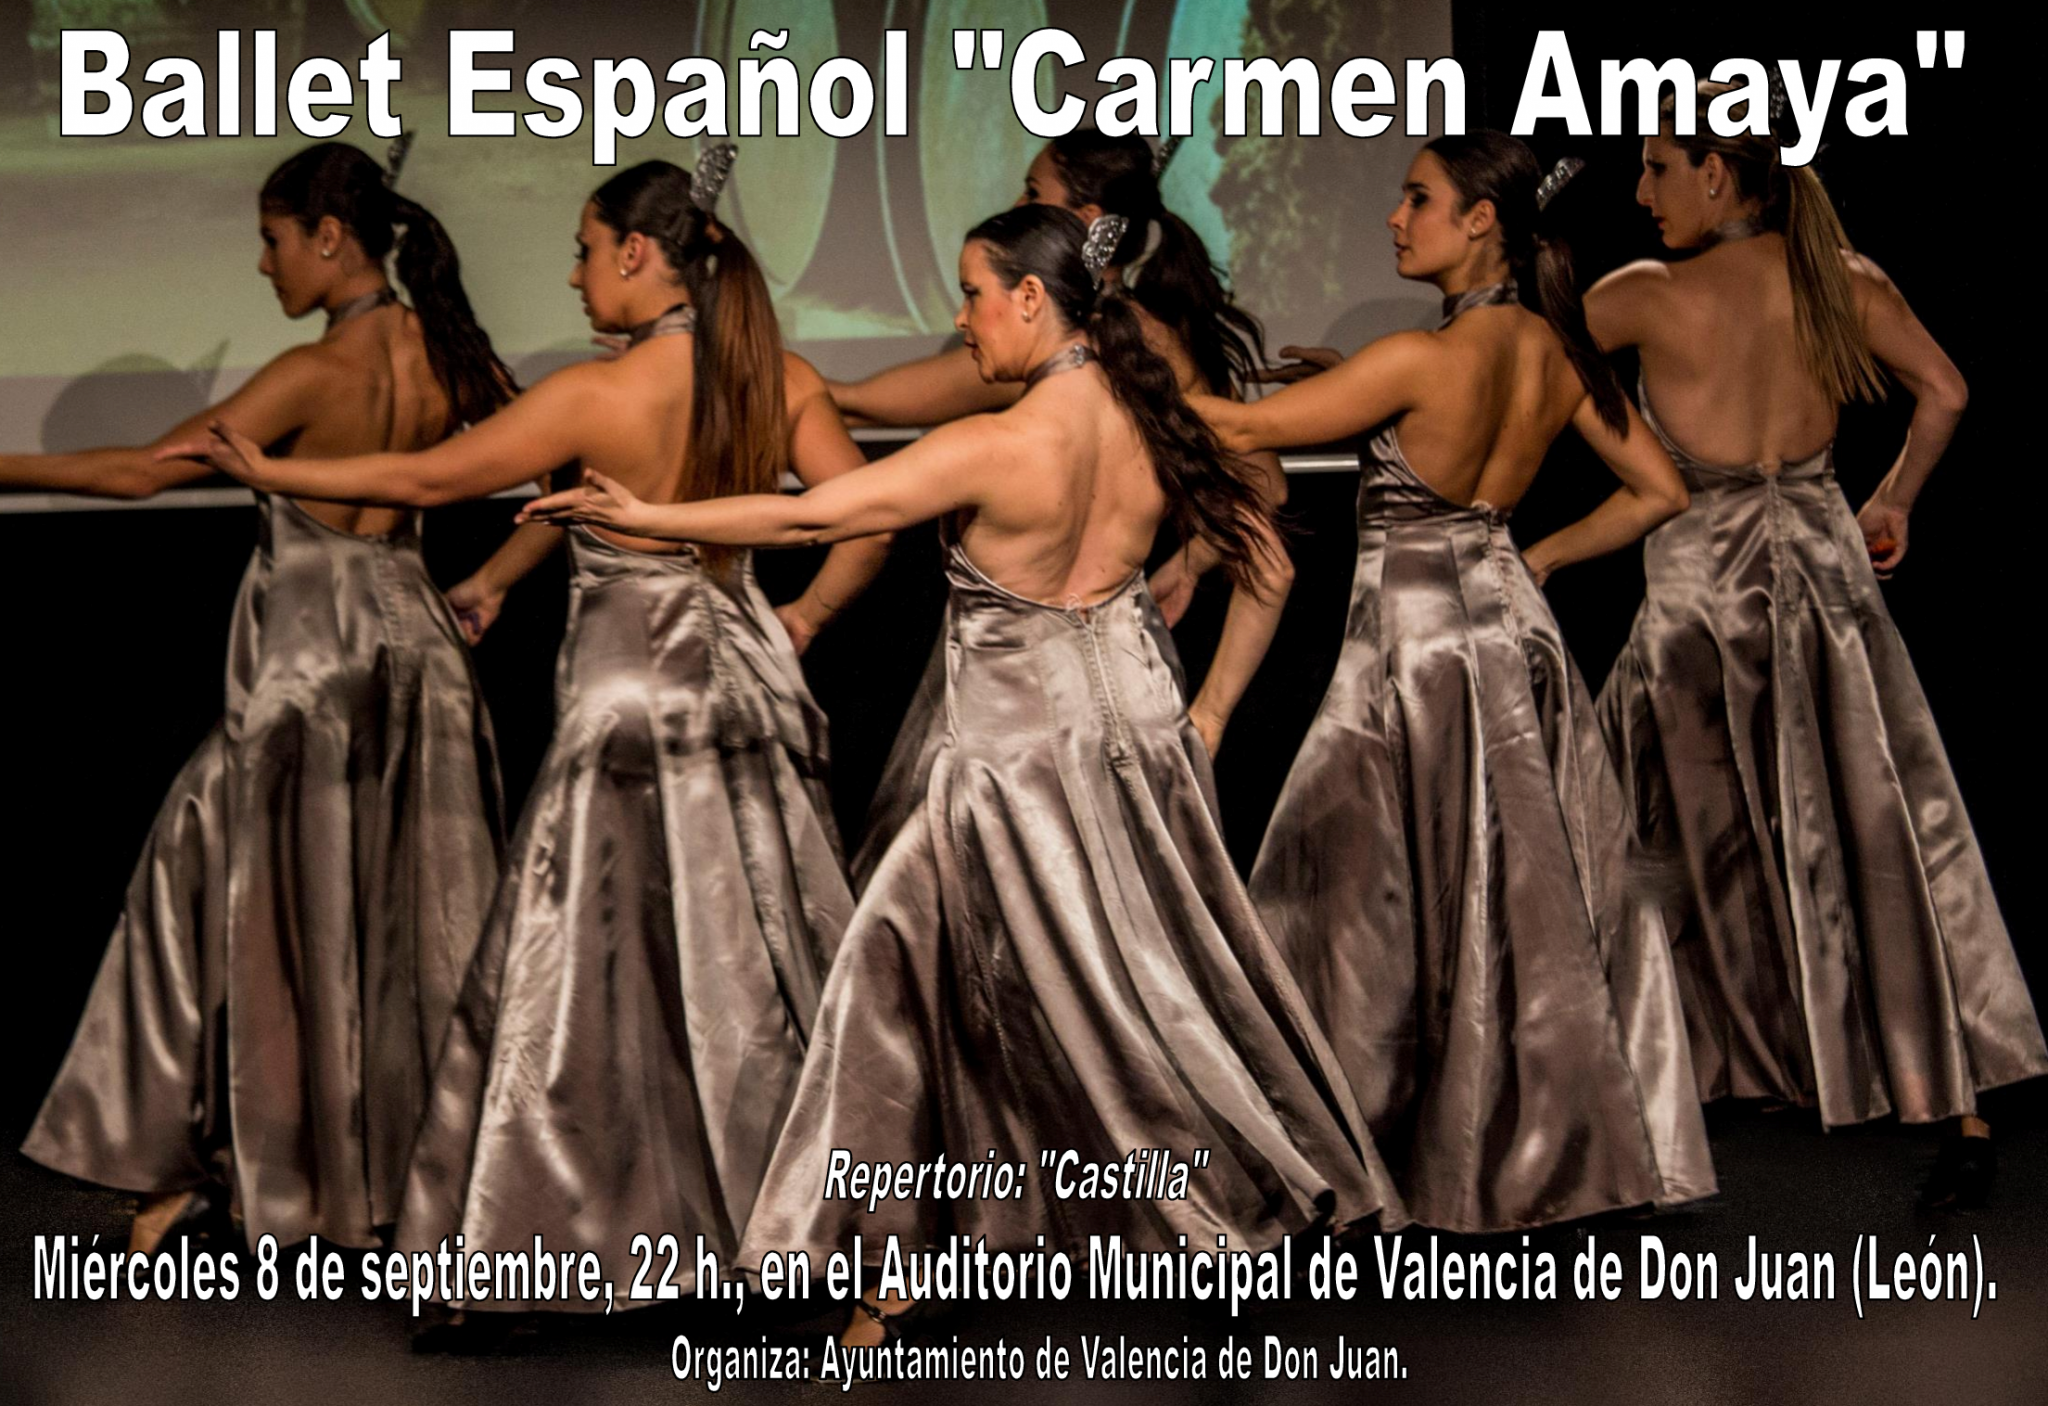 Ballet Carmen Amaya